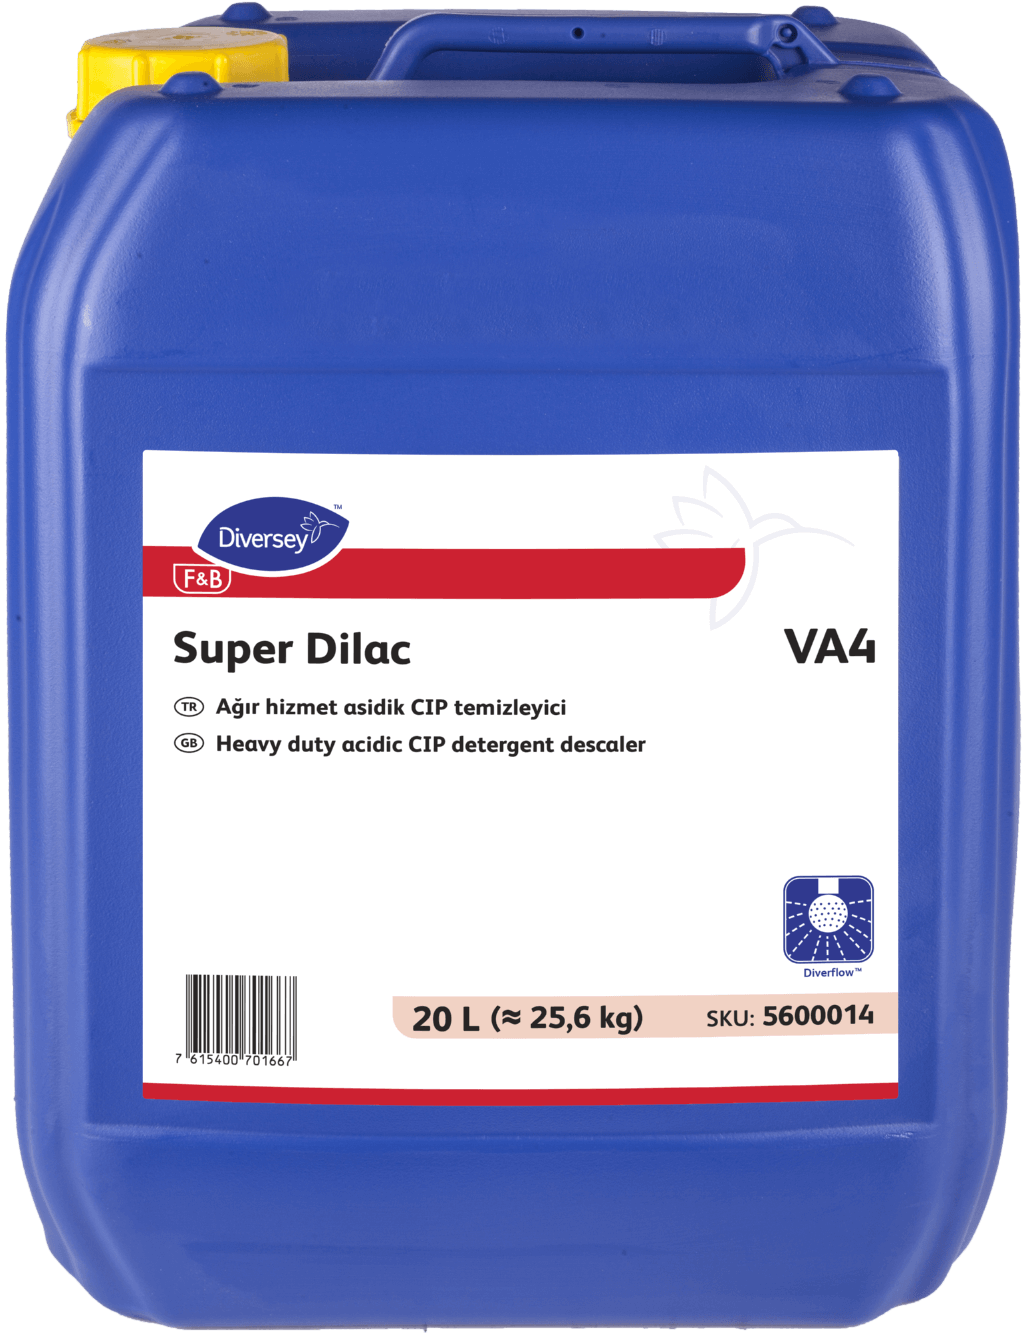 Super Dilac VA4